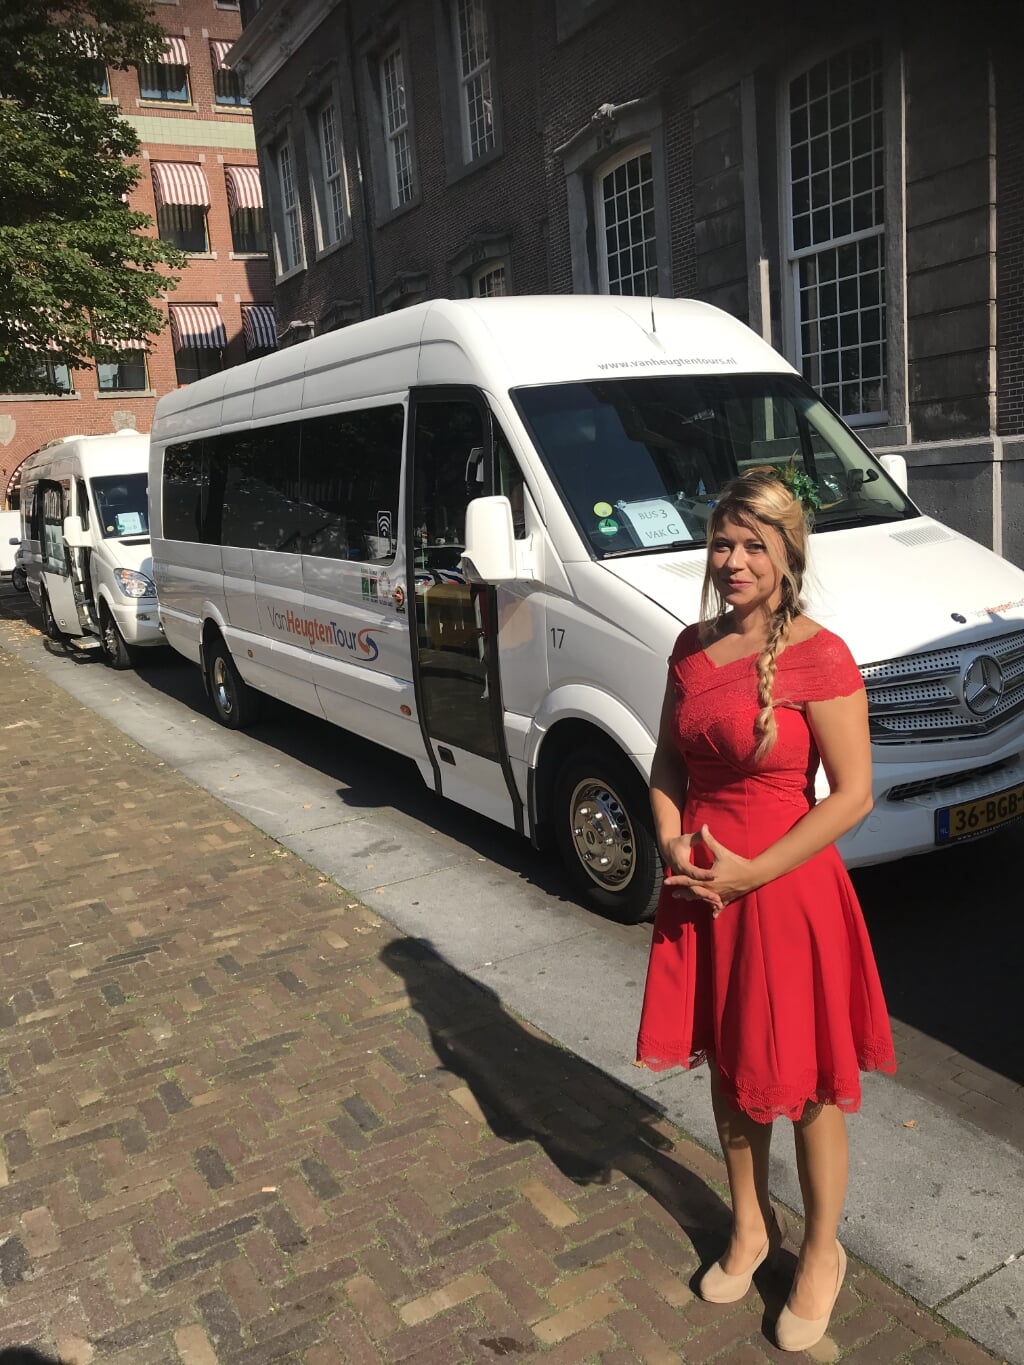 GroenLinks-Kamerlid Lisa Westerveld droeg op Prinsjesdag de rode jurk die ze in 2017 aanhad tijdens het huwelijk van haar middelste broer. Foto: Margreet de Boer